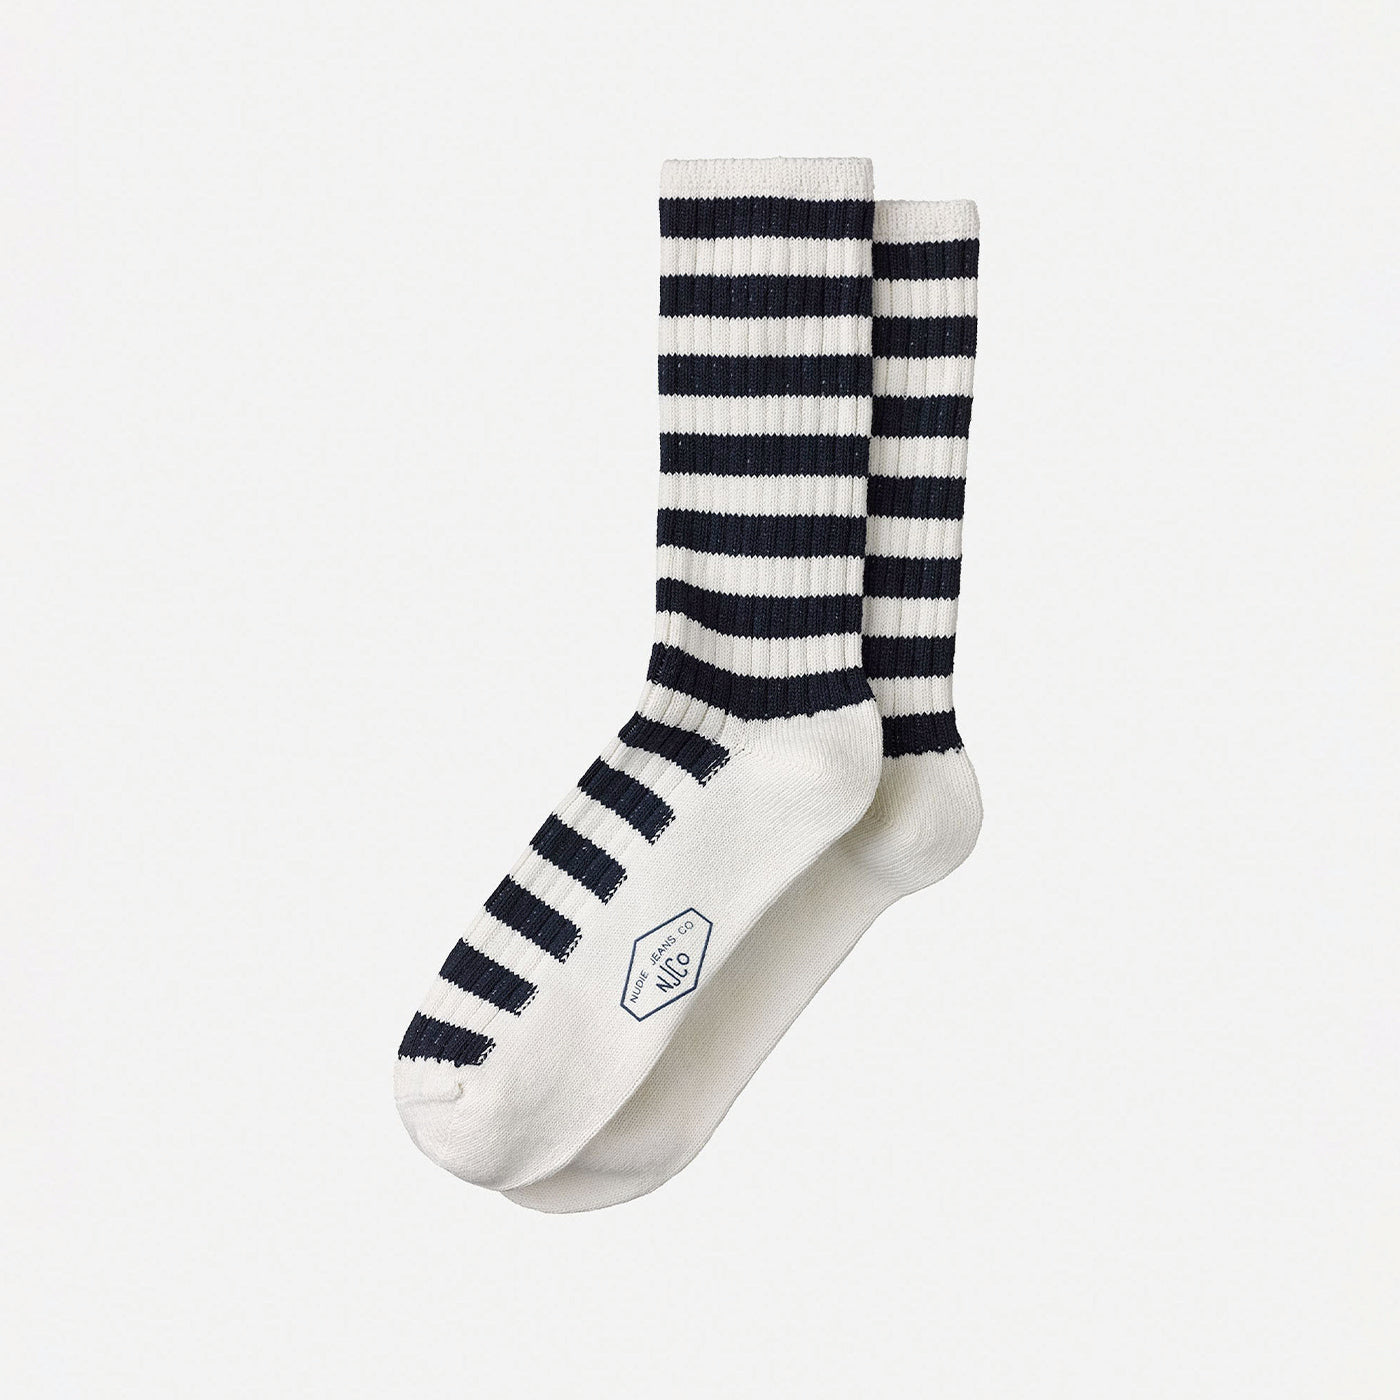 Nudie - Mens Chunky Stripe Socks - Rebirth Navy